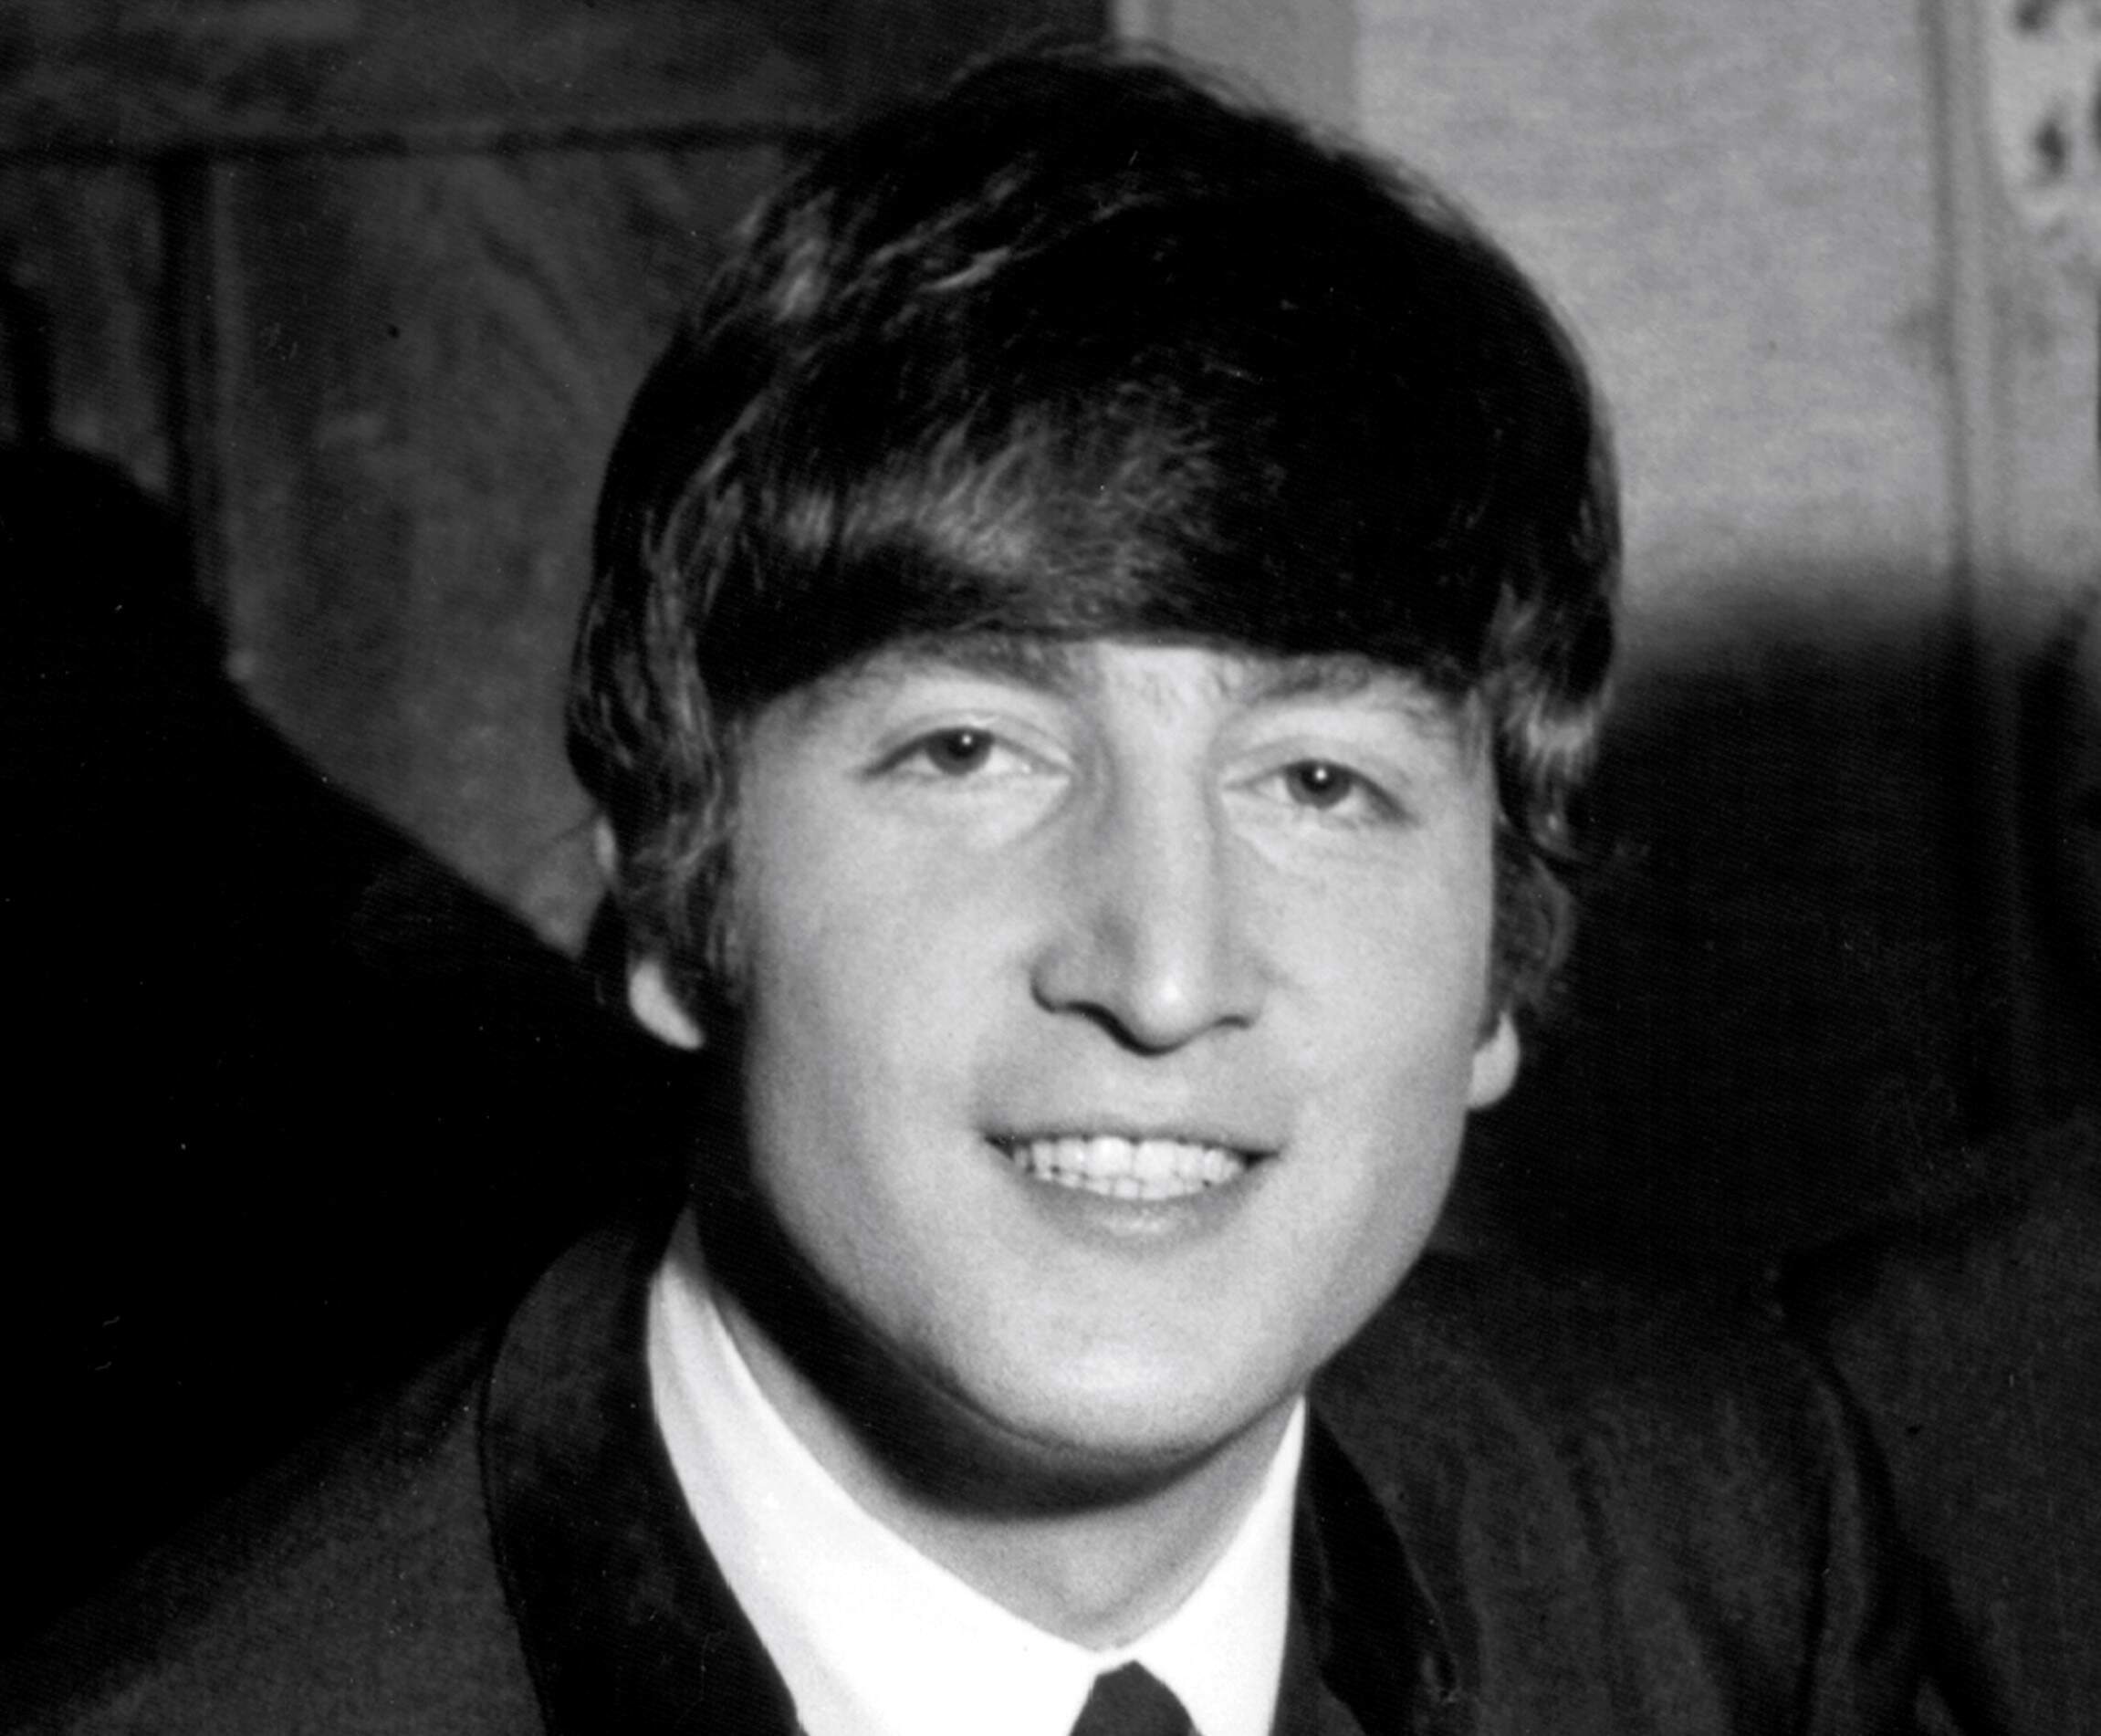 John Lennon smiling